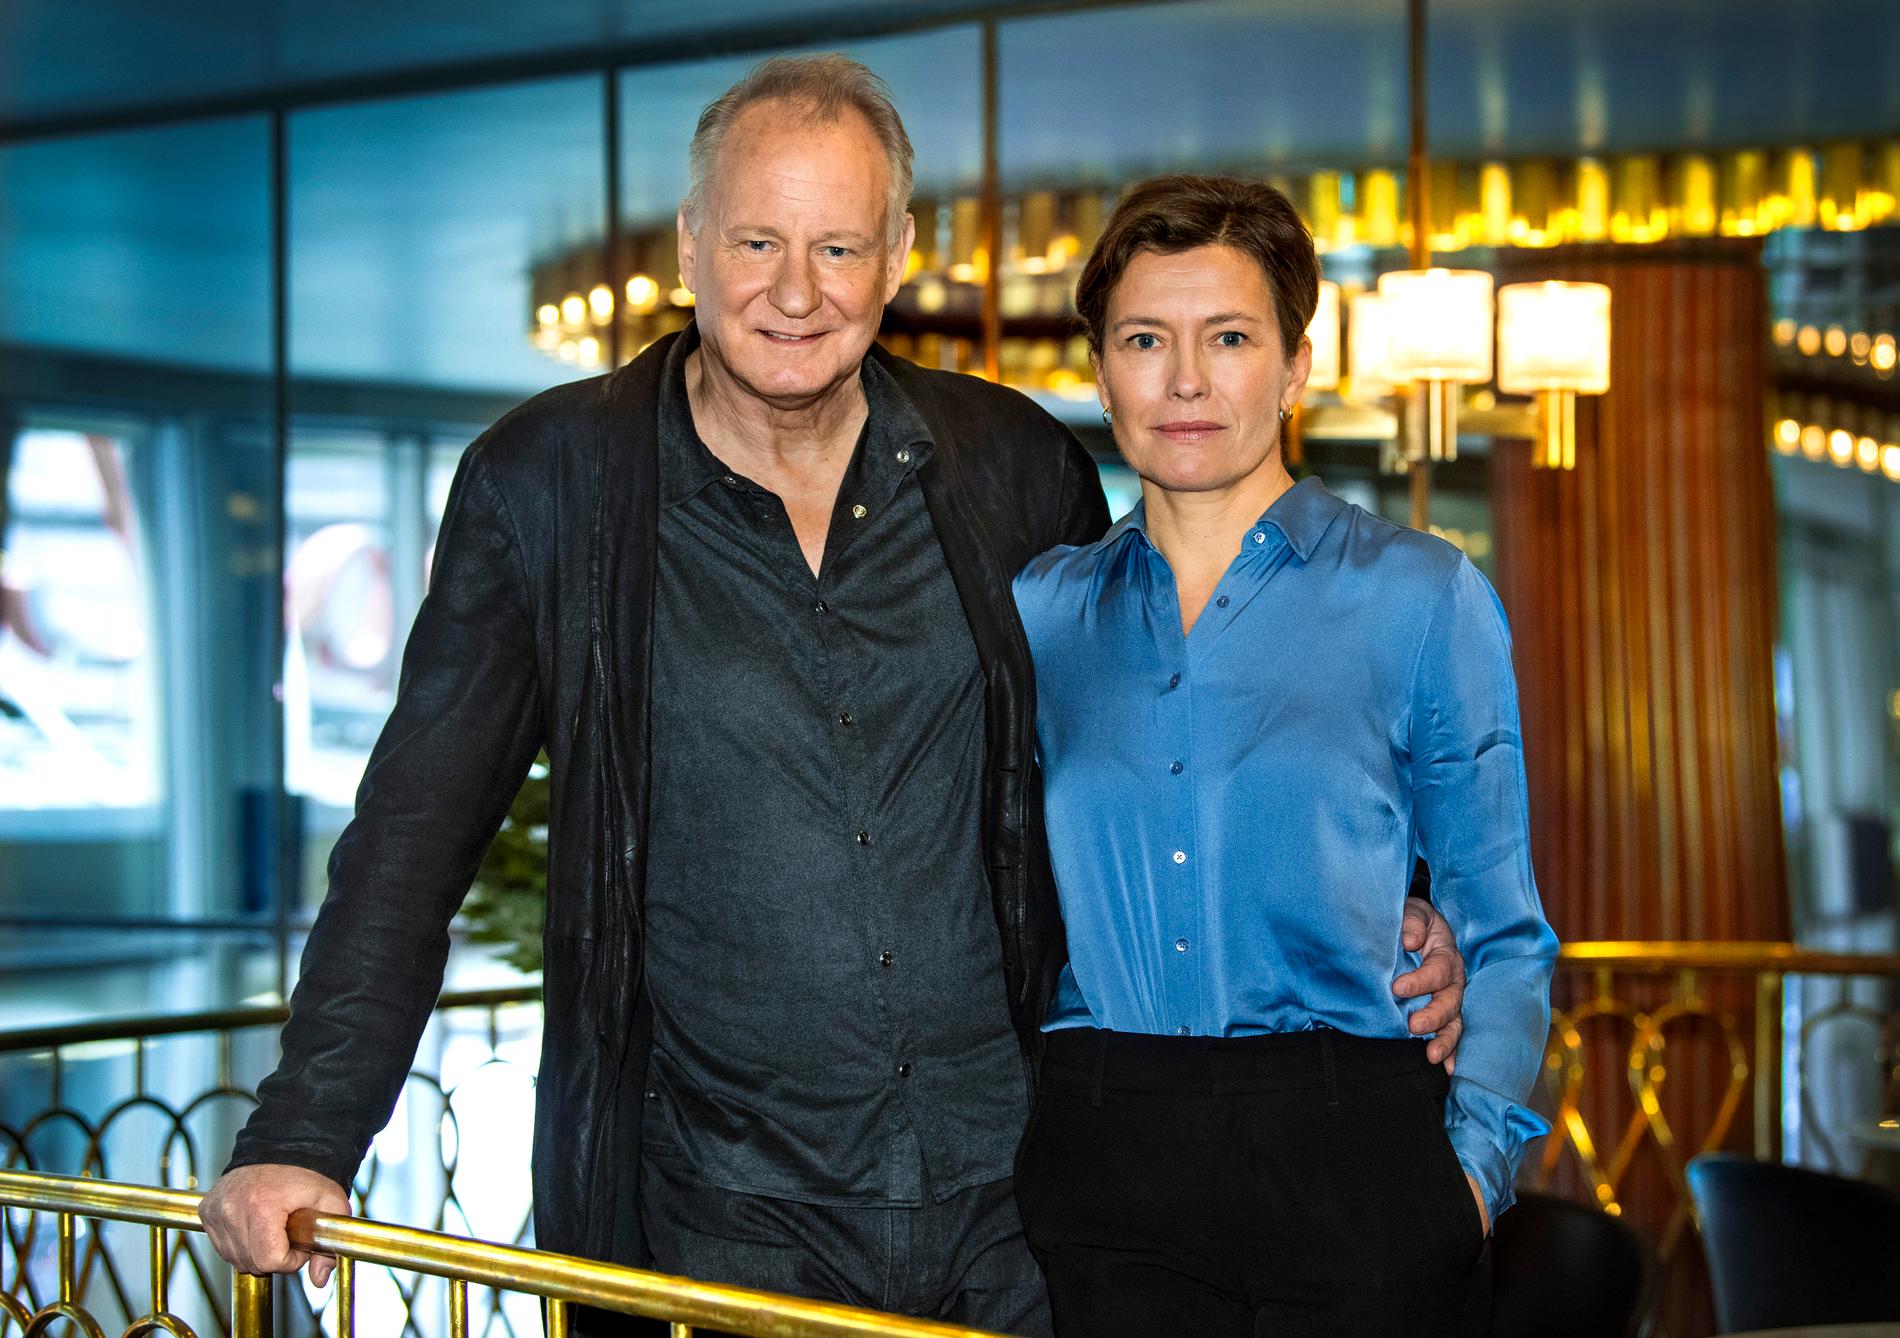 Skådespelaren Stellan Skarsgård och regissören och manusförfattaren Maria Sødahl är aktuella med filmen ”Leva på hoppet”.